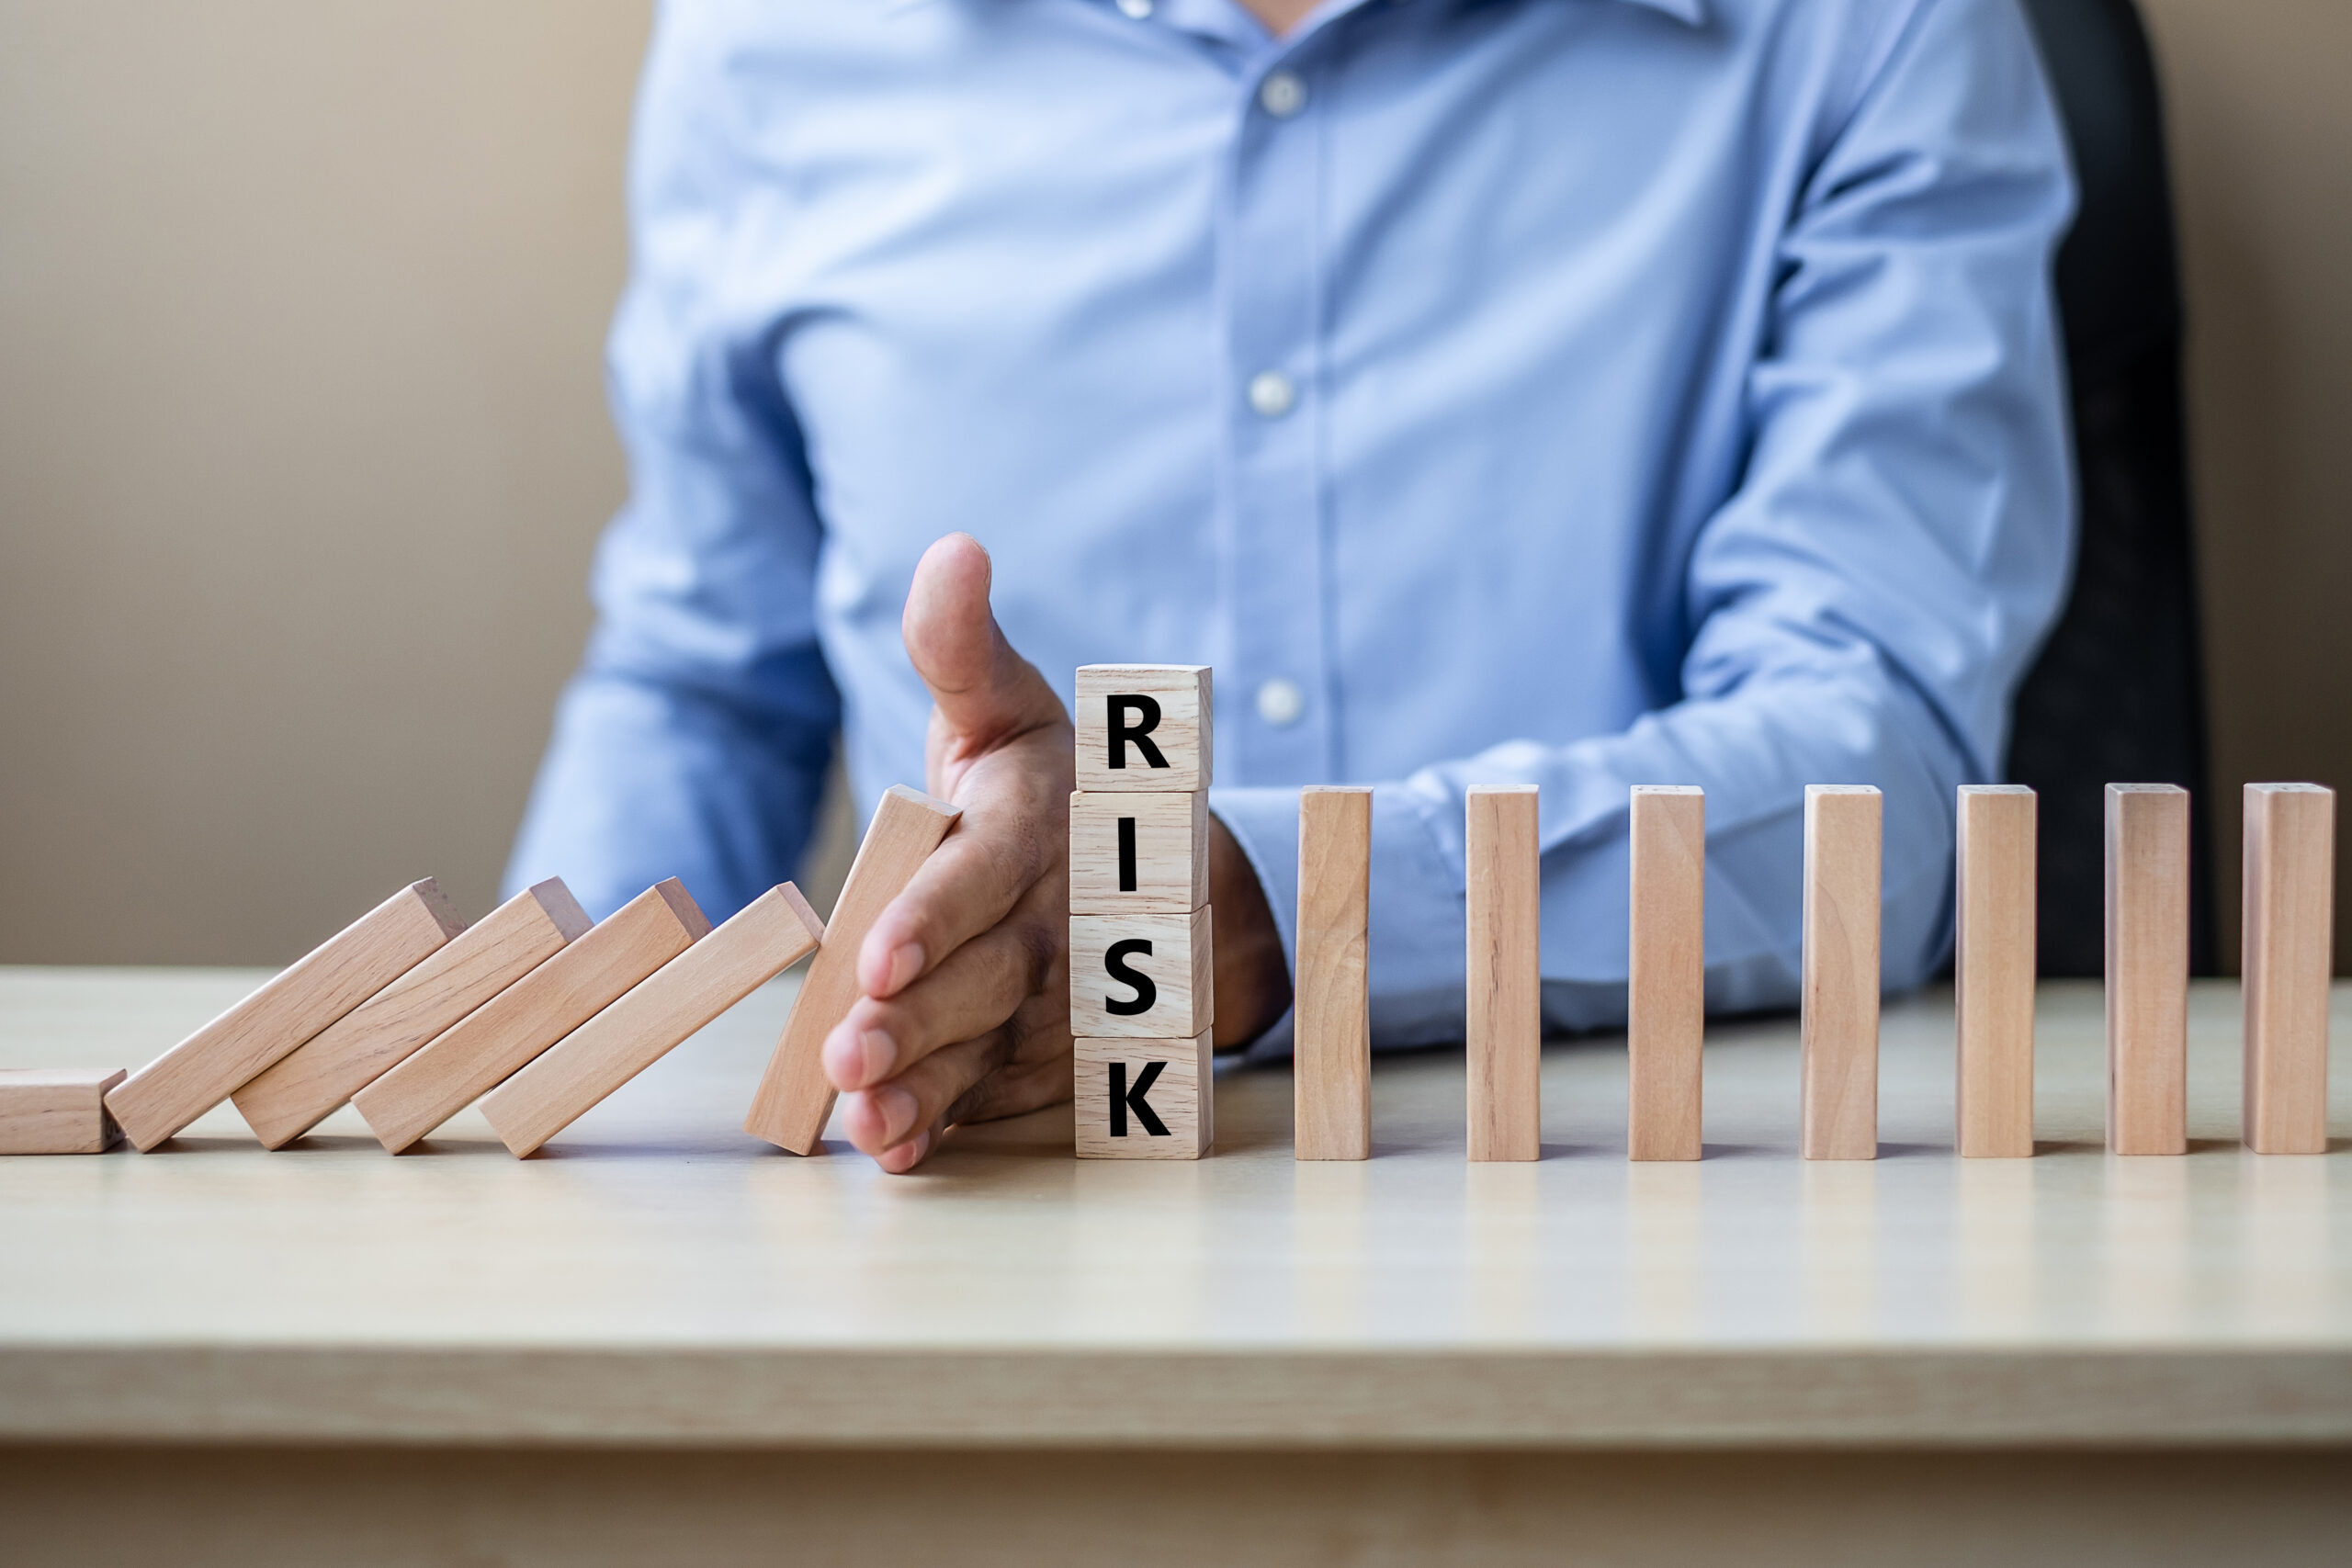 Risk & Insurance